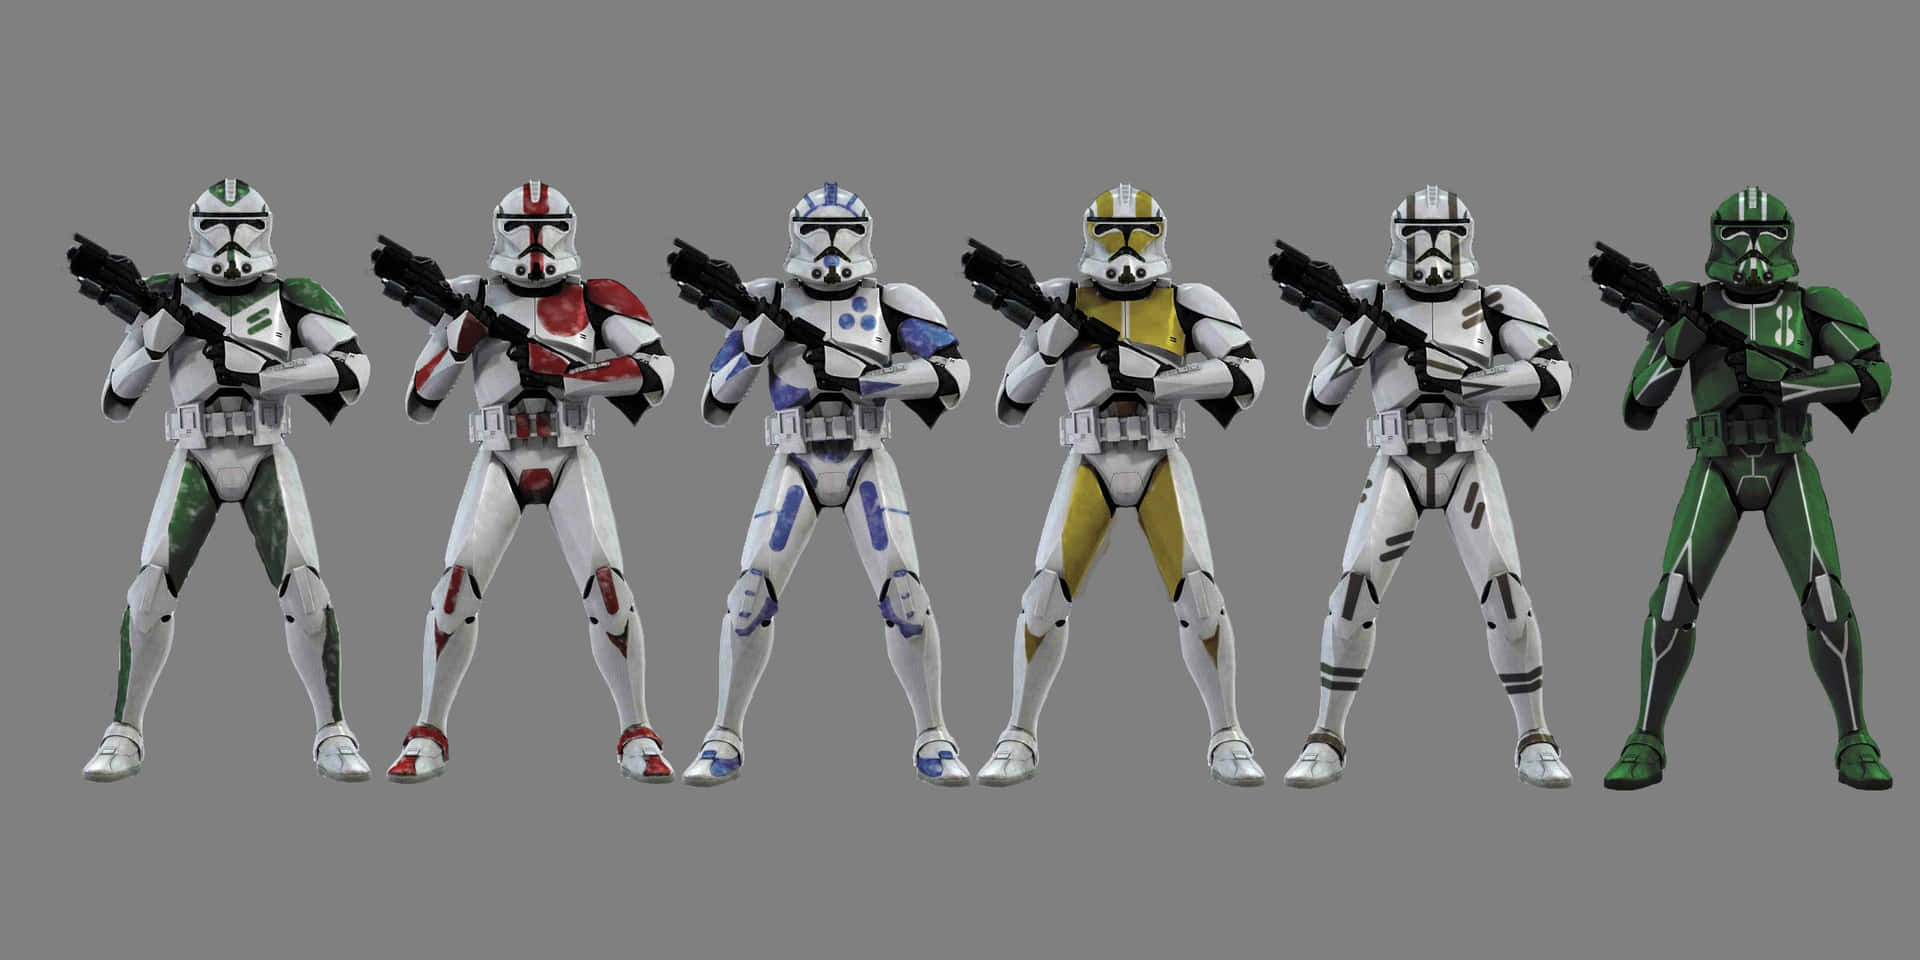 Preparatiper La Battaglia Con Questi Clone Troopers Dell'universo Di Star Wars! Sfondo